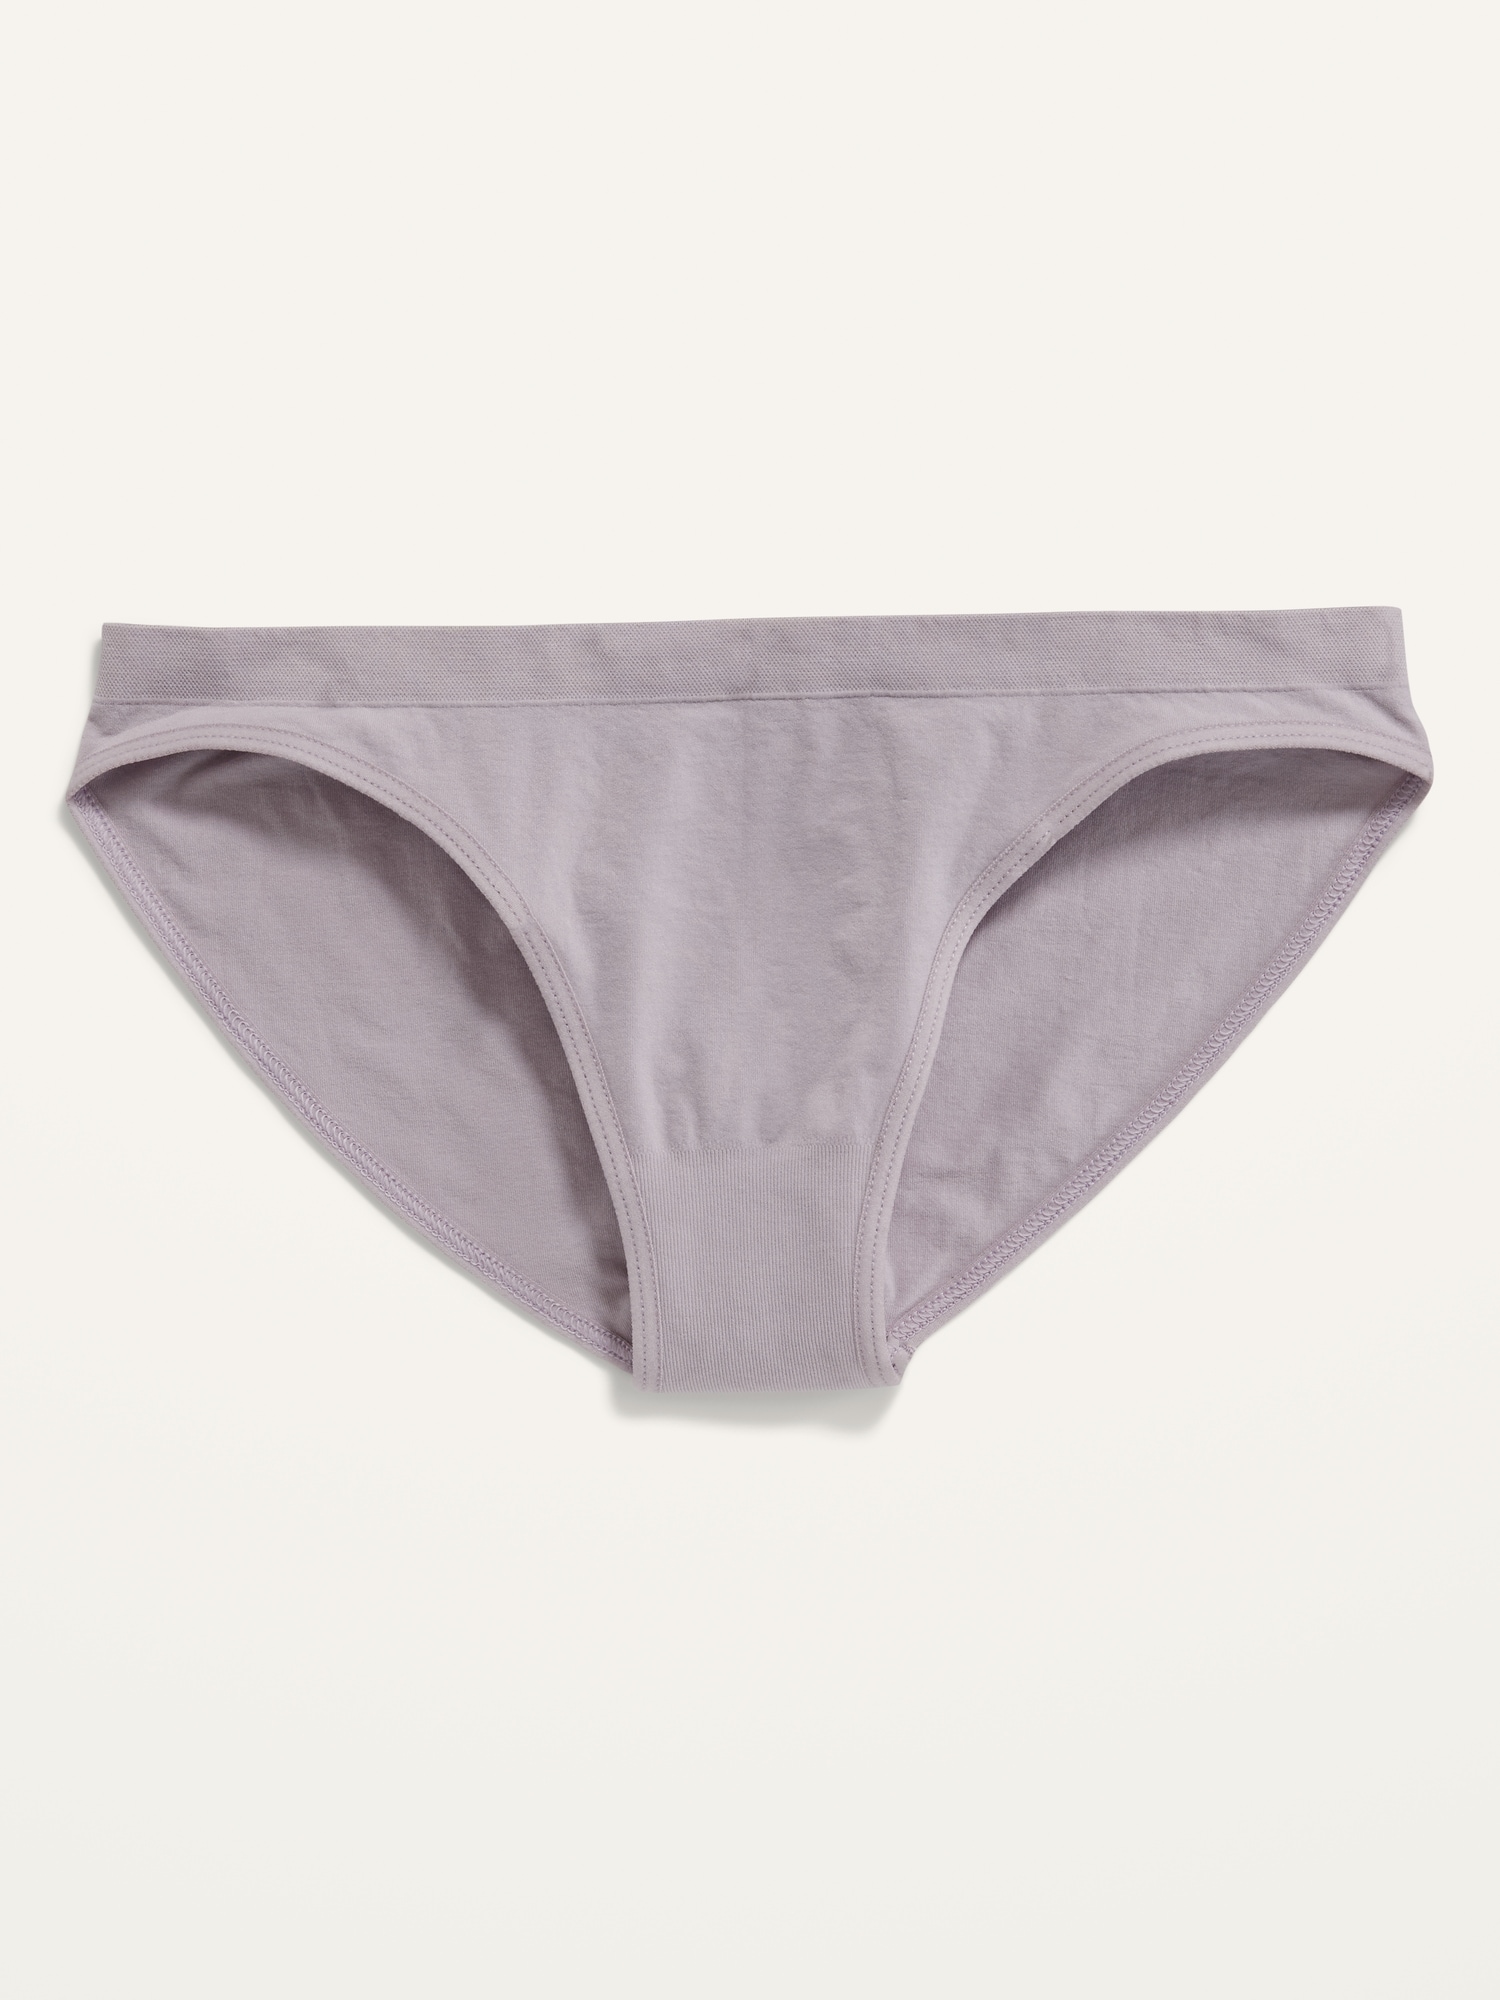 Old Navy Low-Rise Seamless Bikini Underwear for Women purple. 1